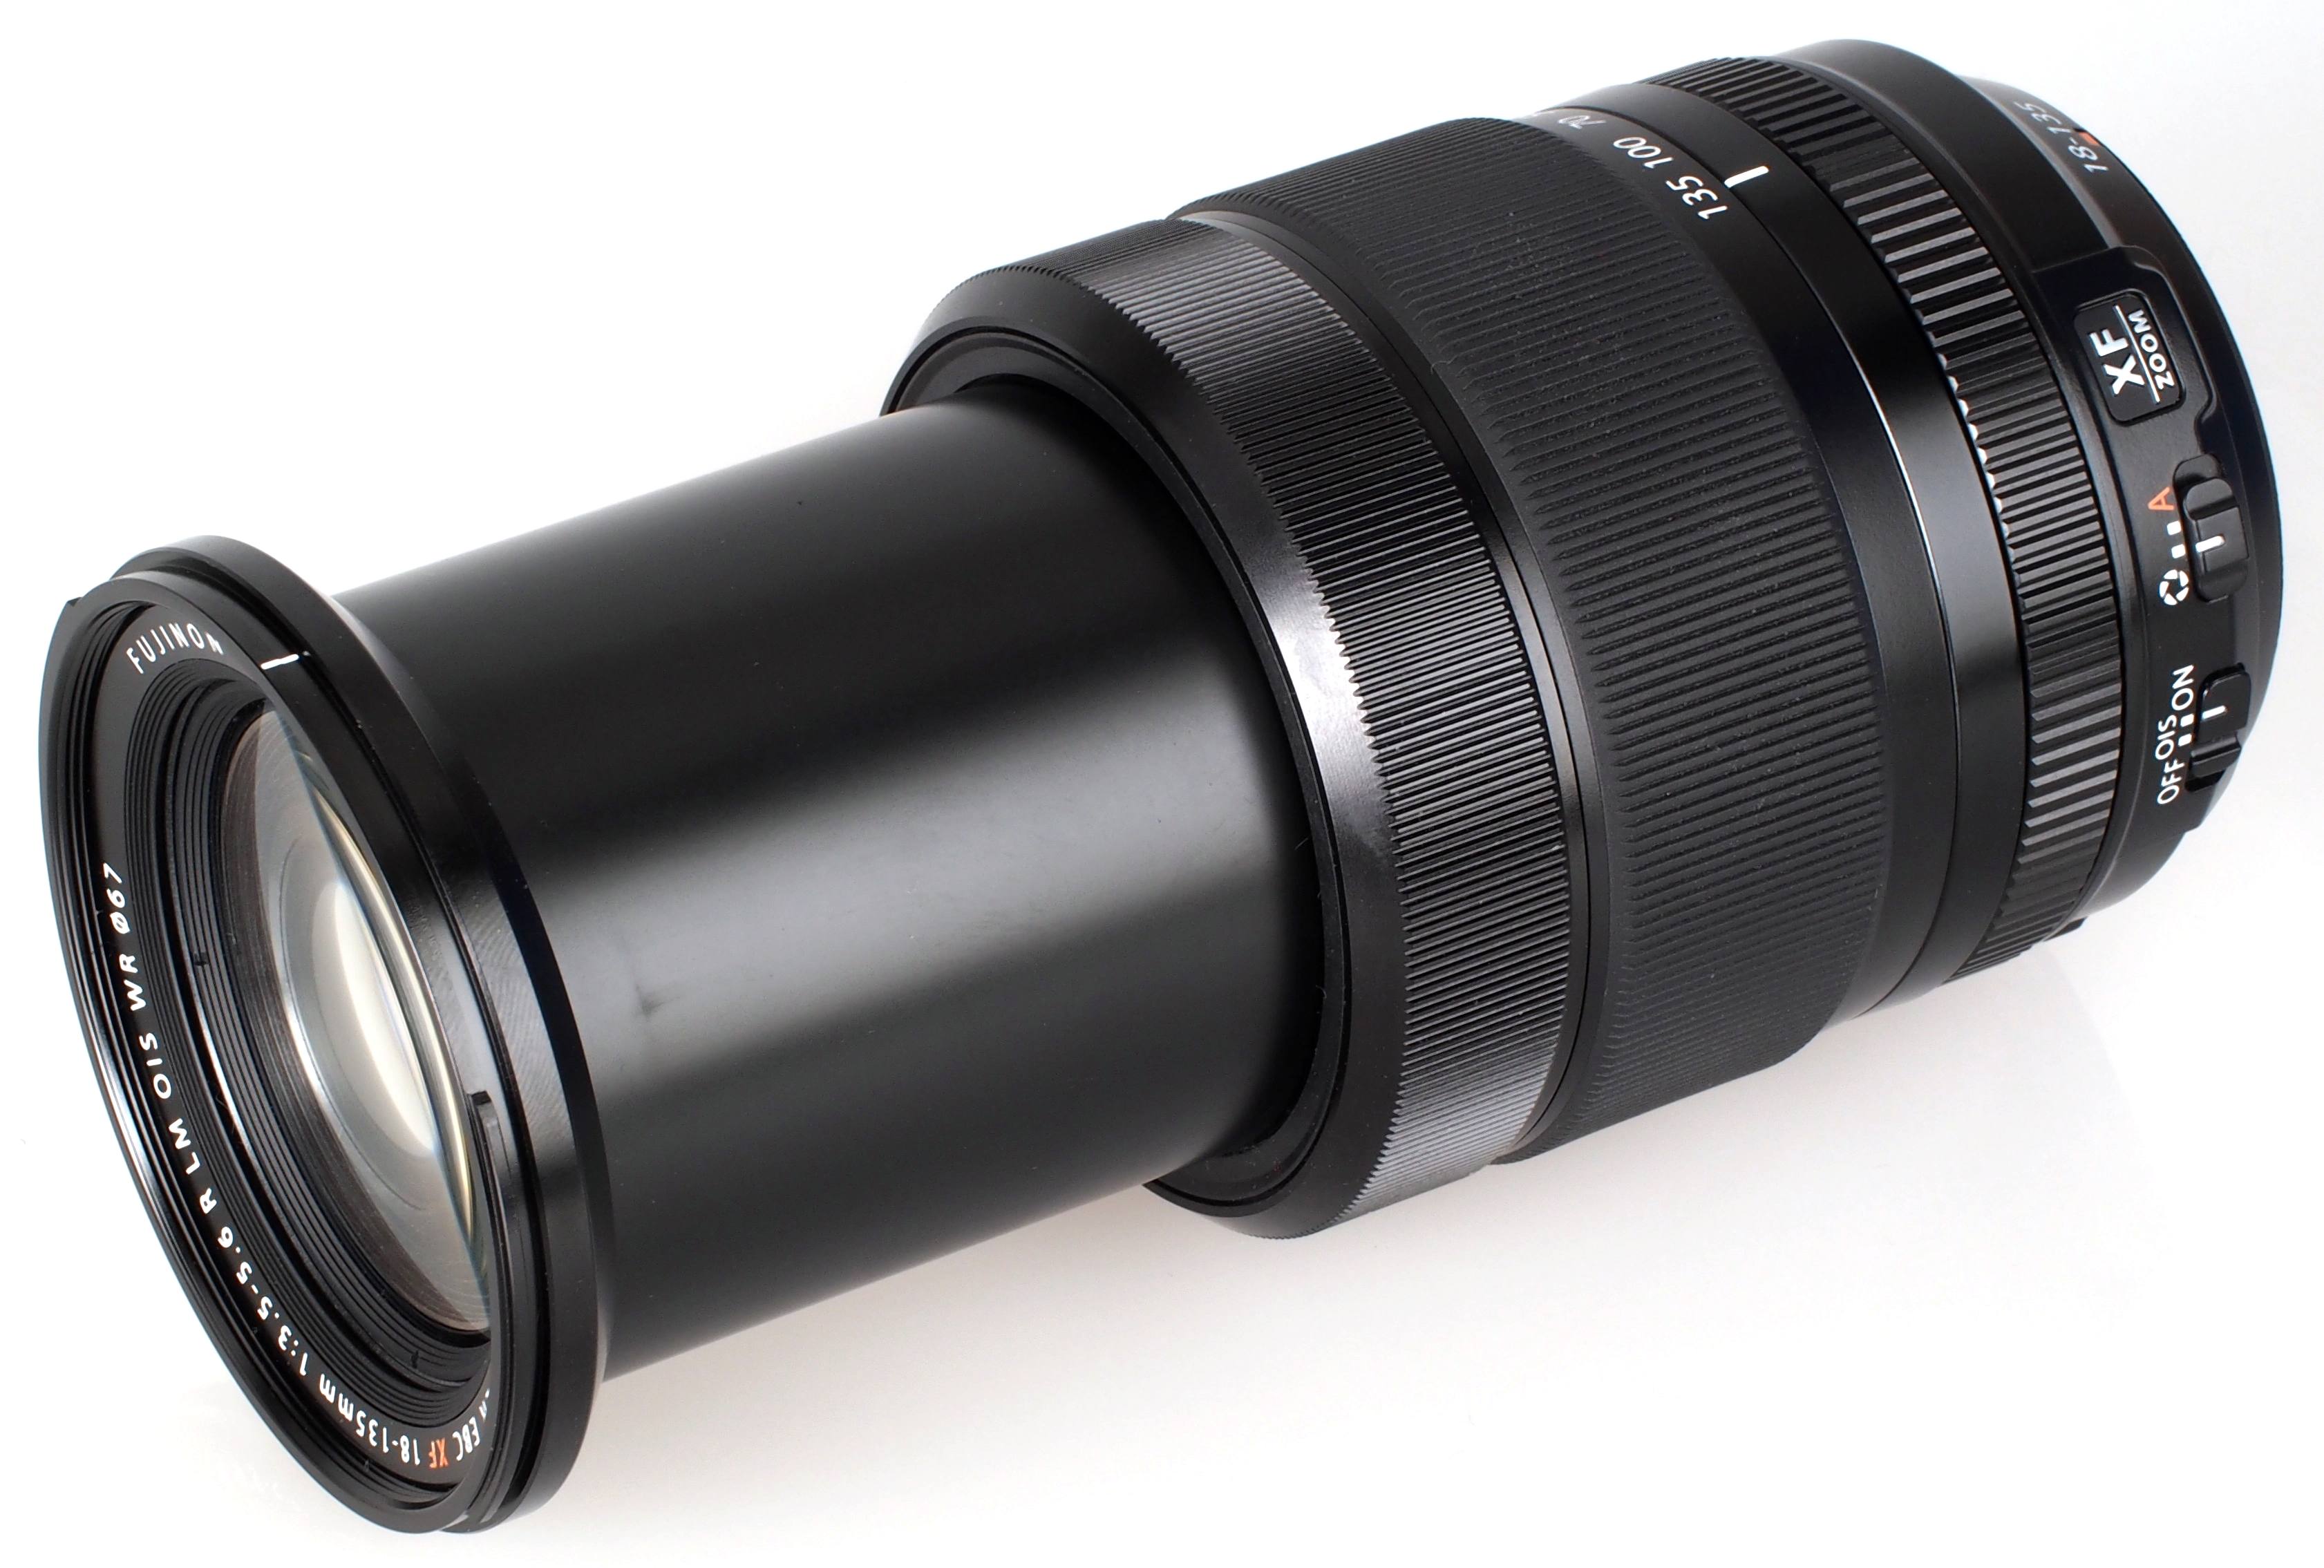 Fujifilm XF 18-135mm f3.5-5.6 R LM OIS WR Lens